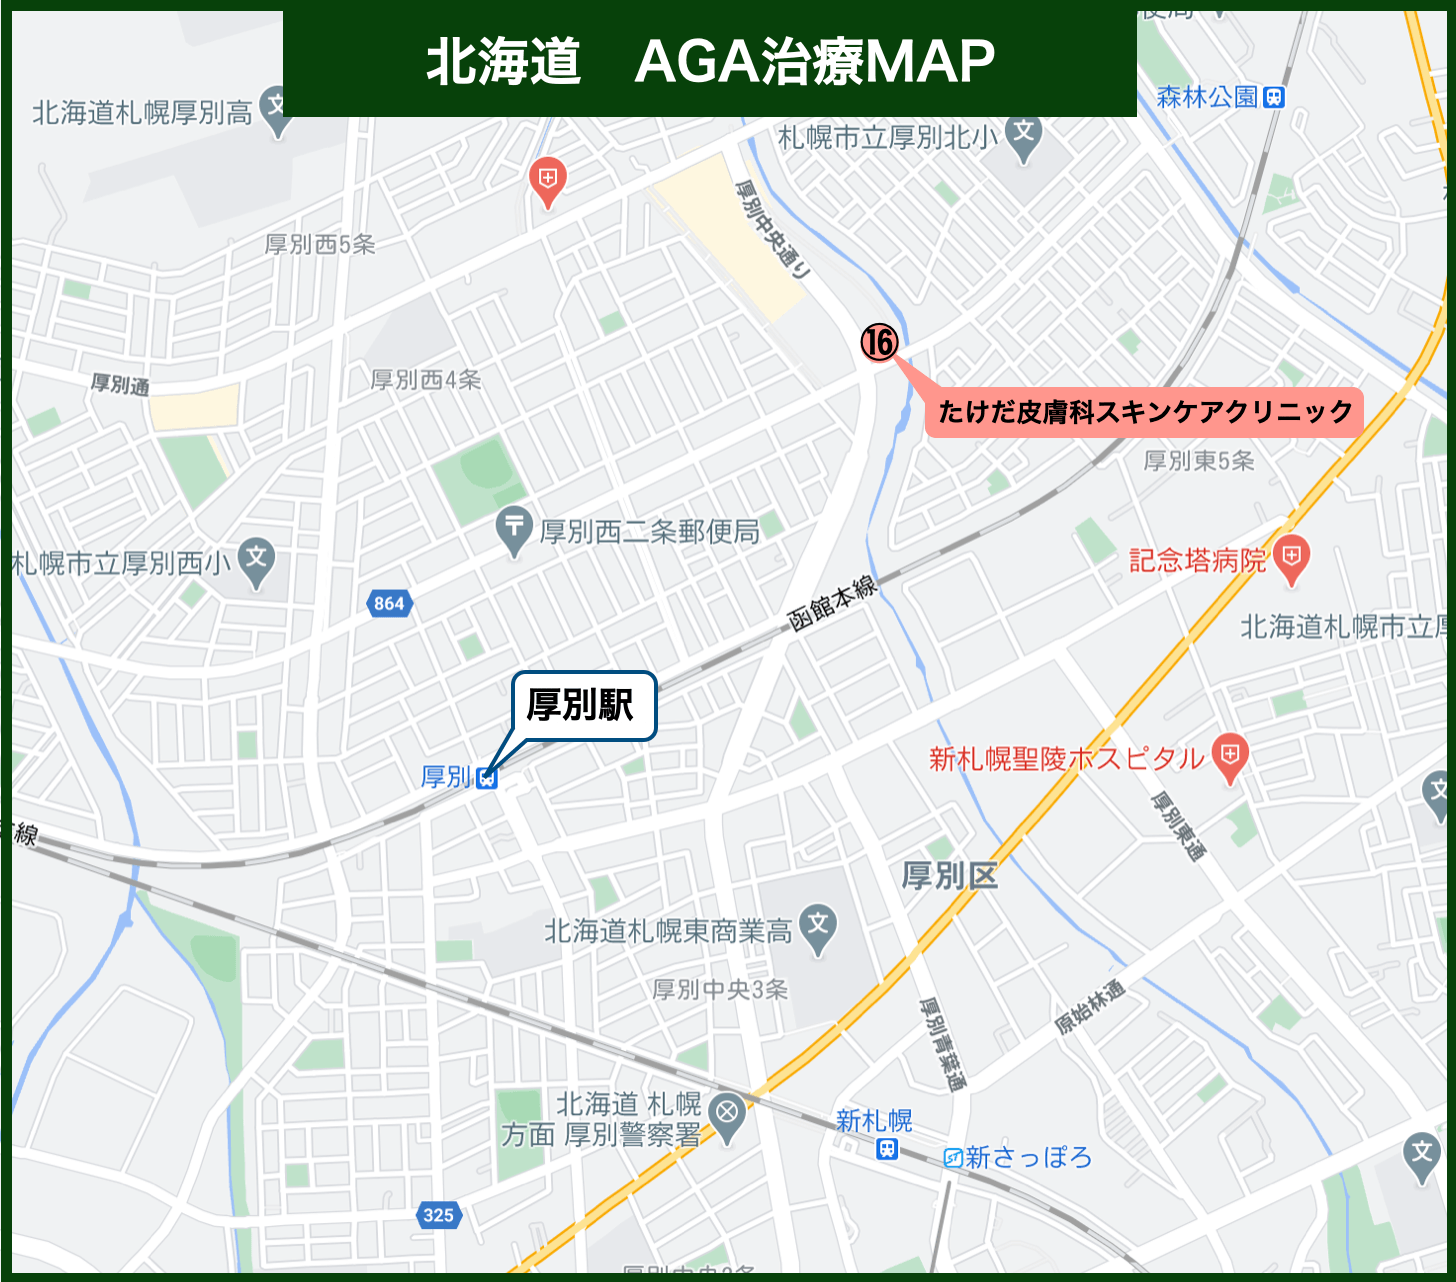 北海道AGA治療MAP